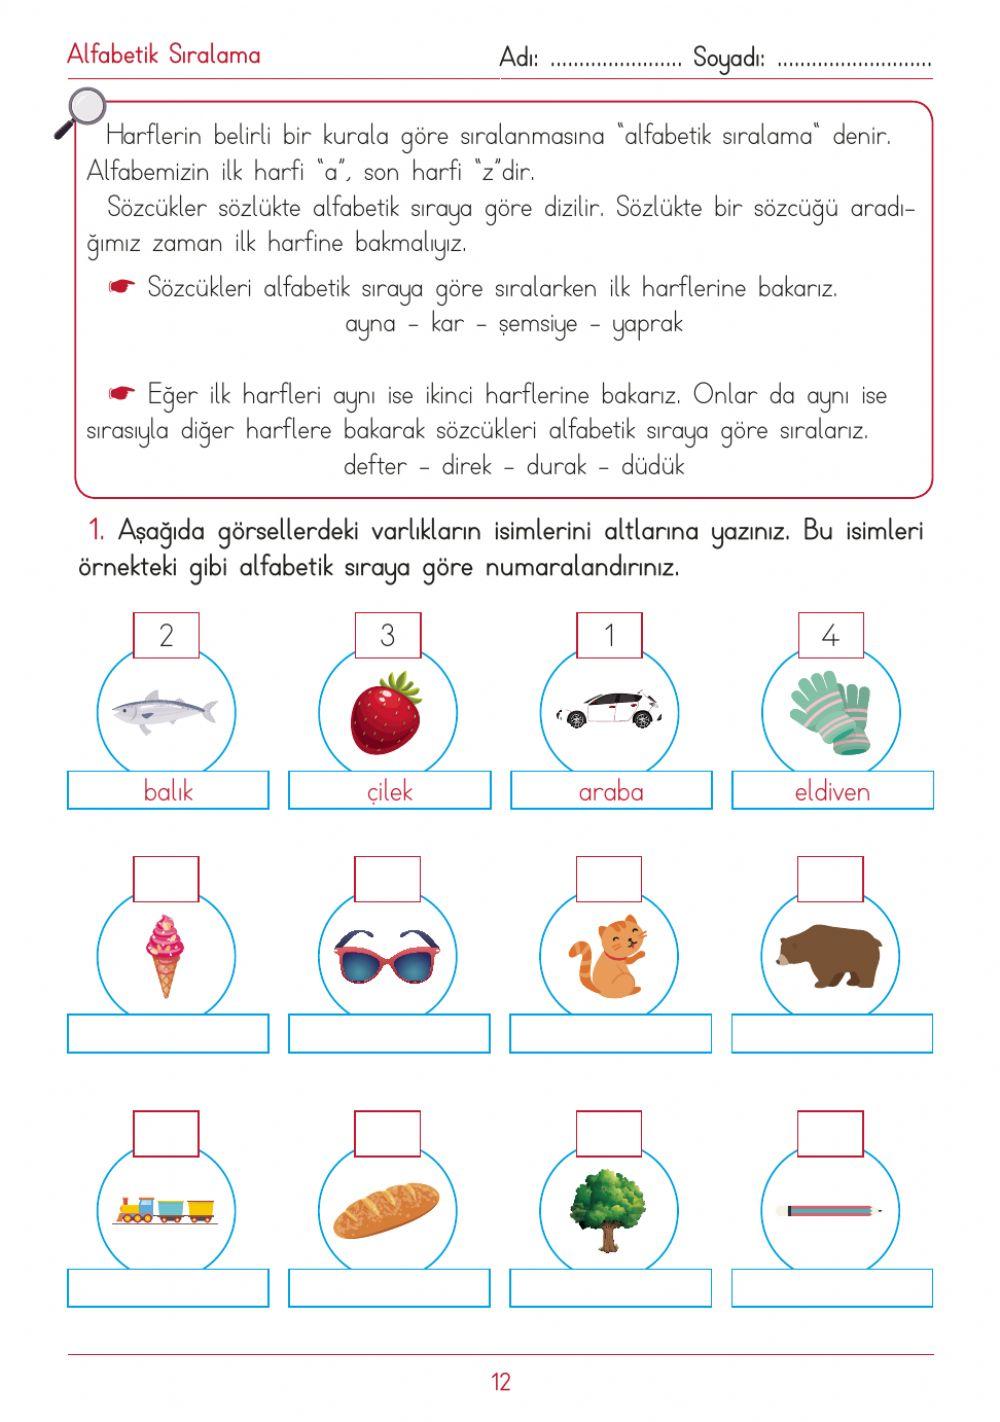 Türkçe alfabetik sıralama